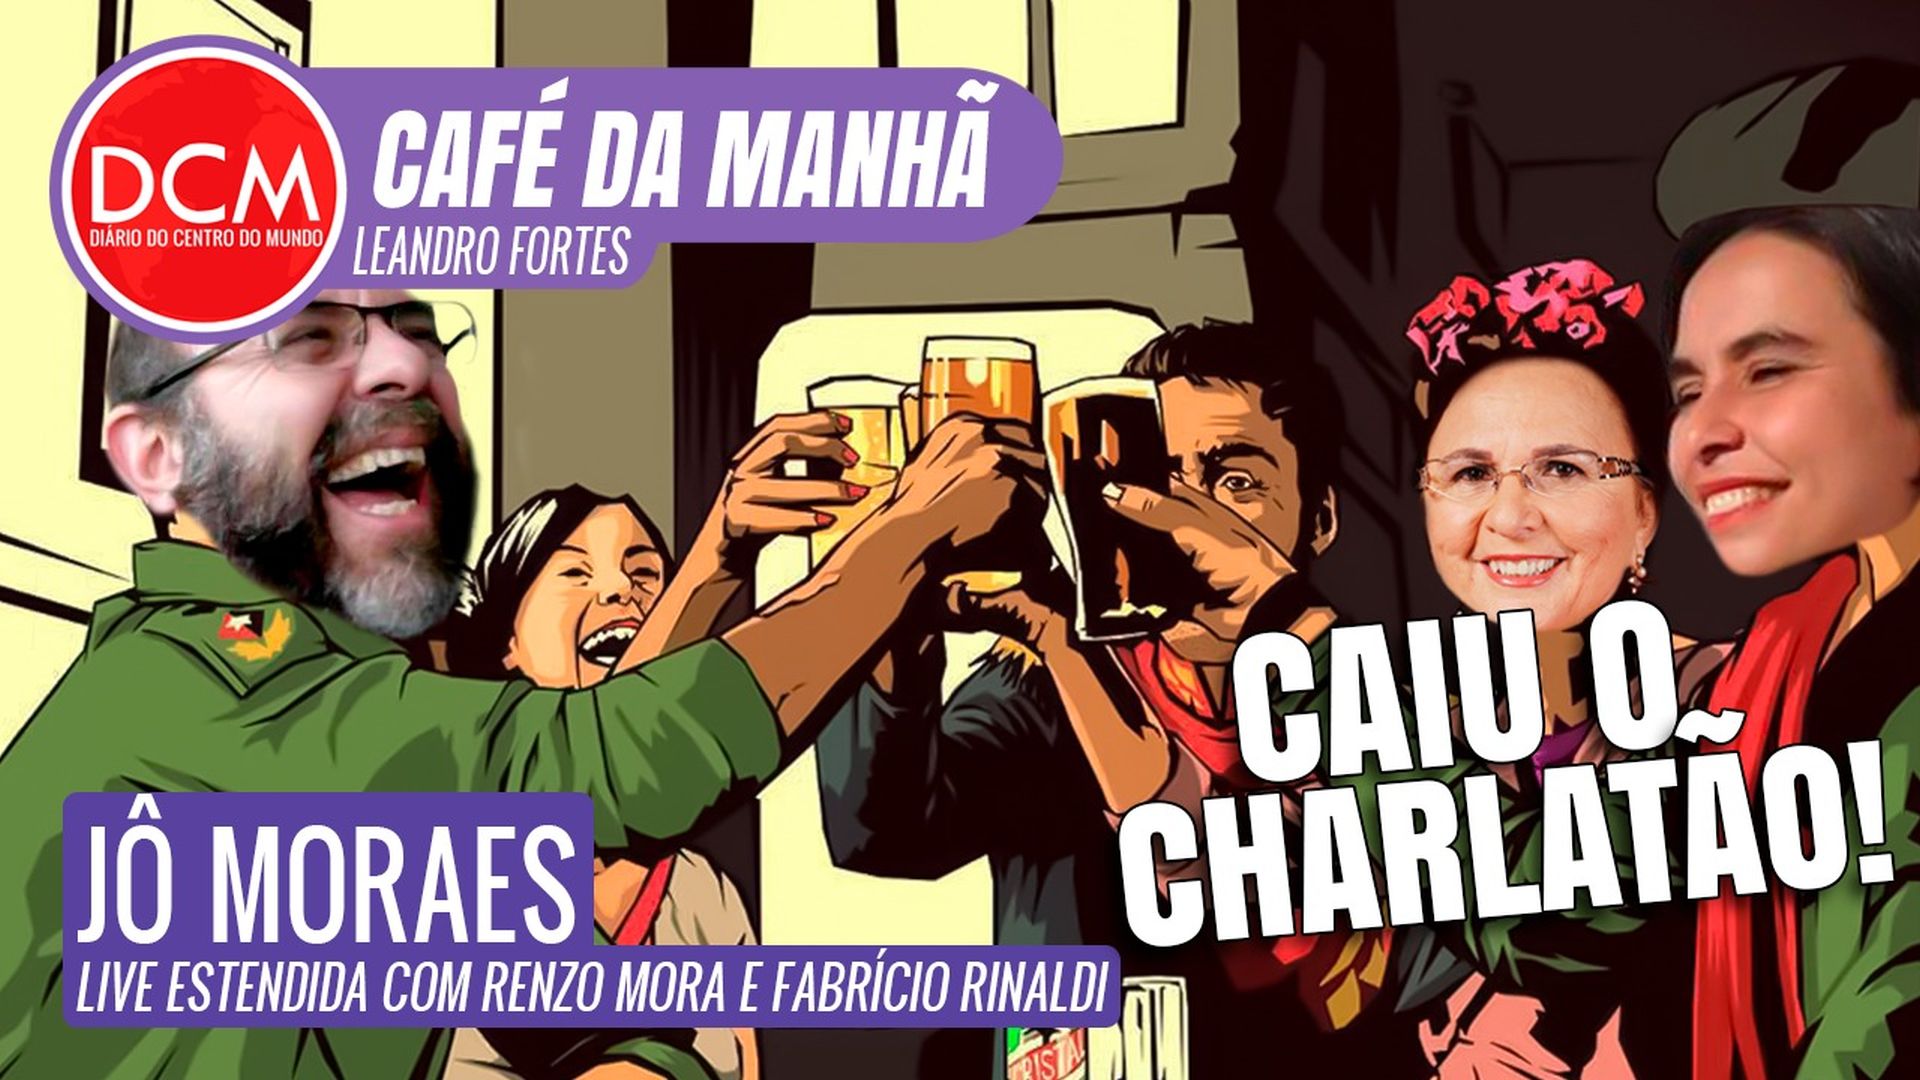 DCM Café da Manhã: Petrobras cai na mão de entreguista profissional